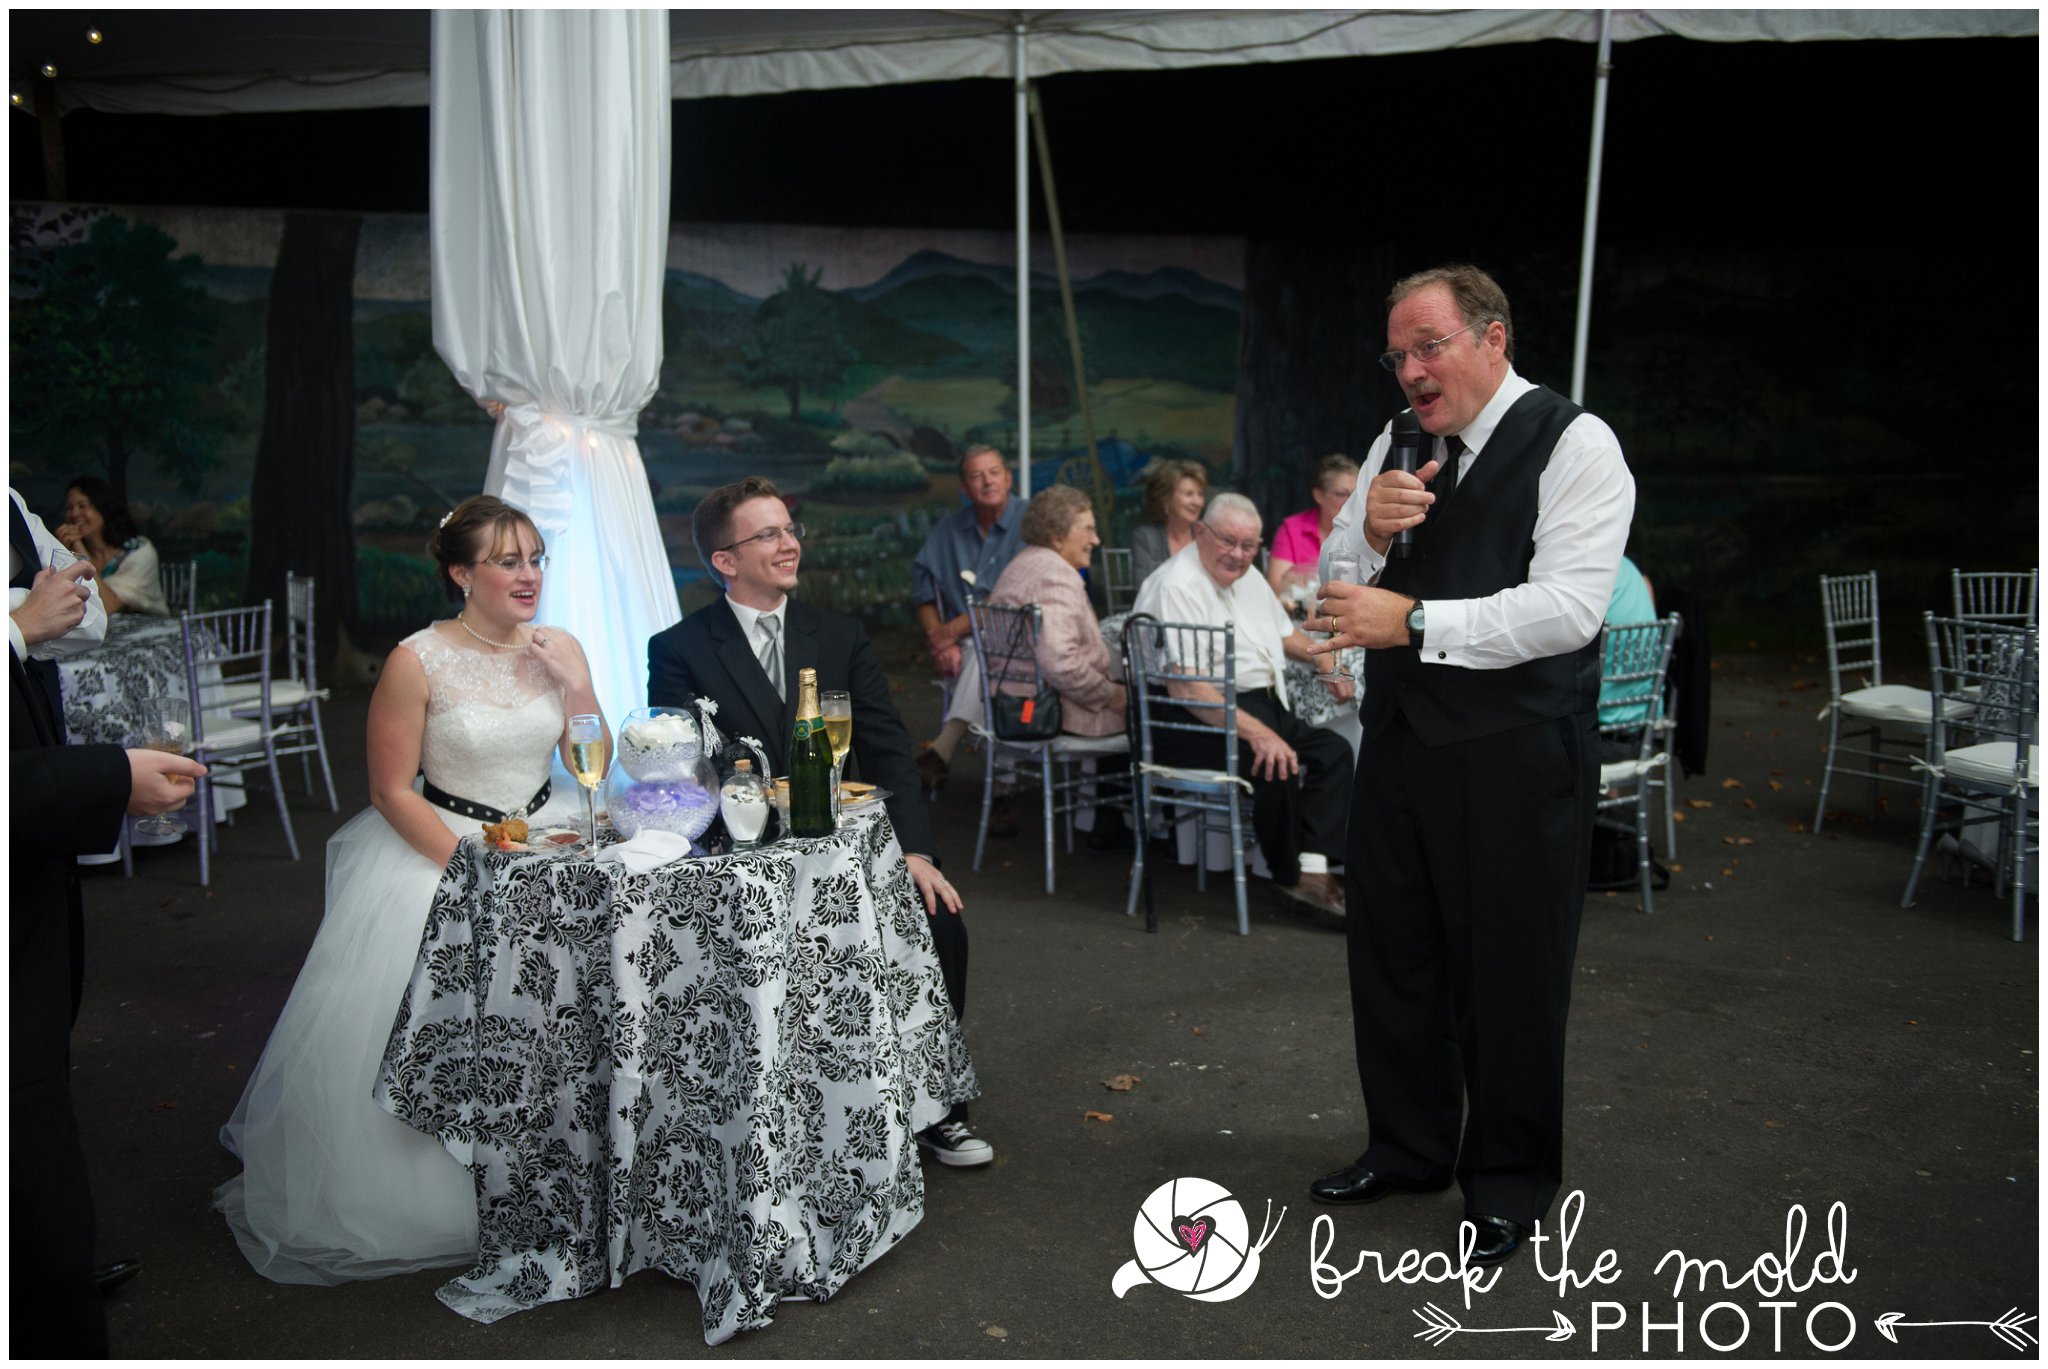 break-the-mold-photo-wedding-zoo-knoxville-tn_5976.jpg